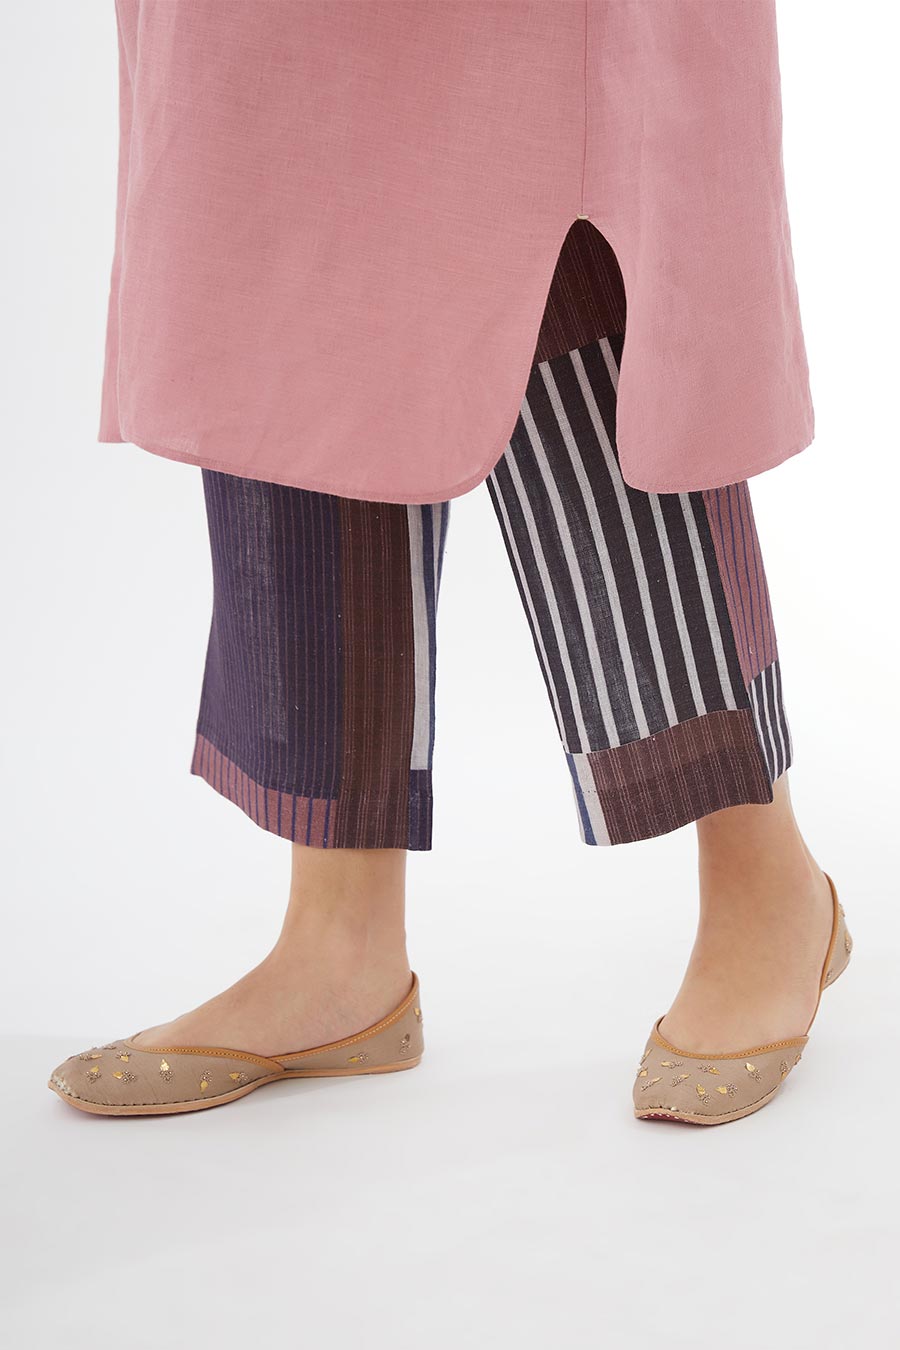 Rose Pink Linen Kurta & Pants Set